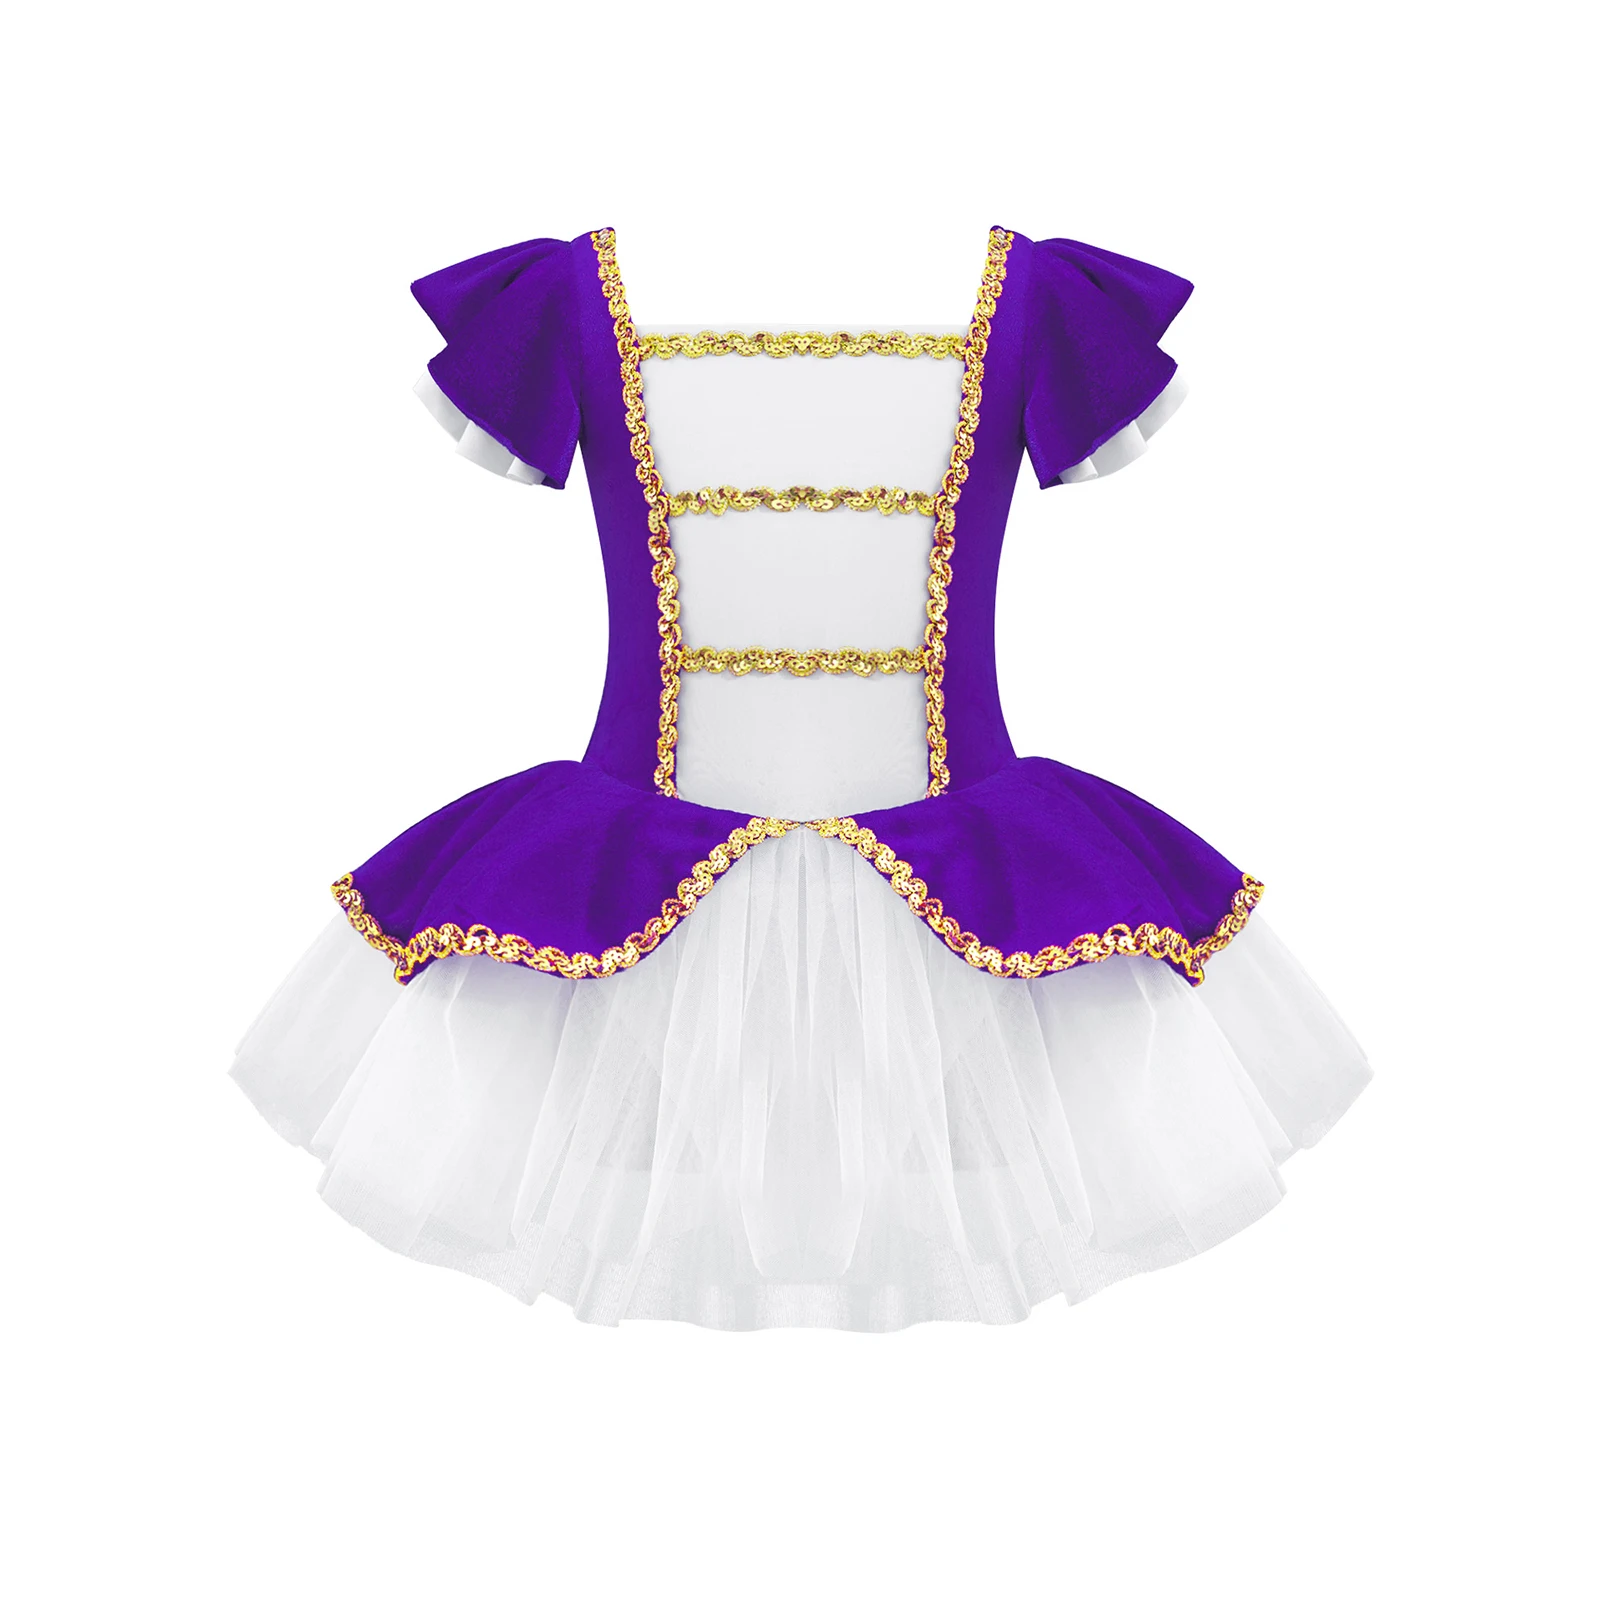 

Kids Girls Ballet Dance Princess Tutu Dance Dress Gymnastic Leotards Short Sleeves Dance Jumpsuit with Sequins Adorned Mesh Hem